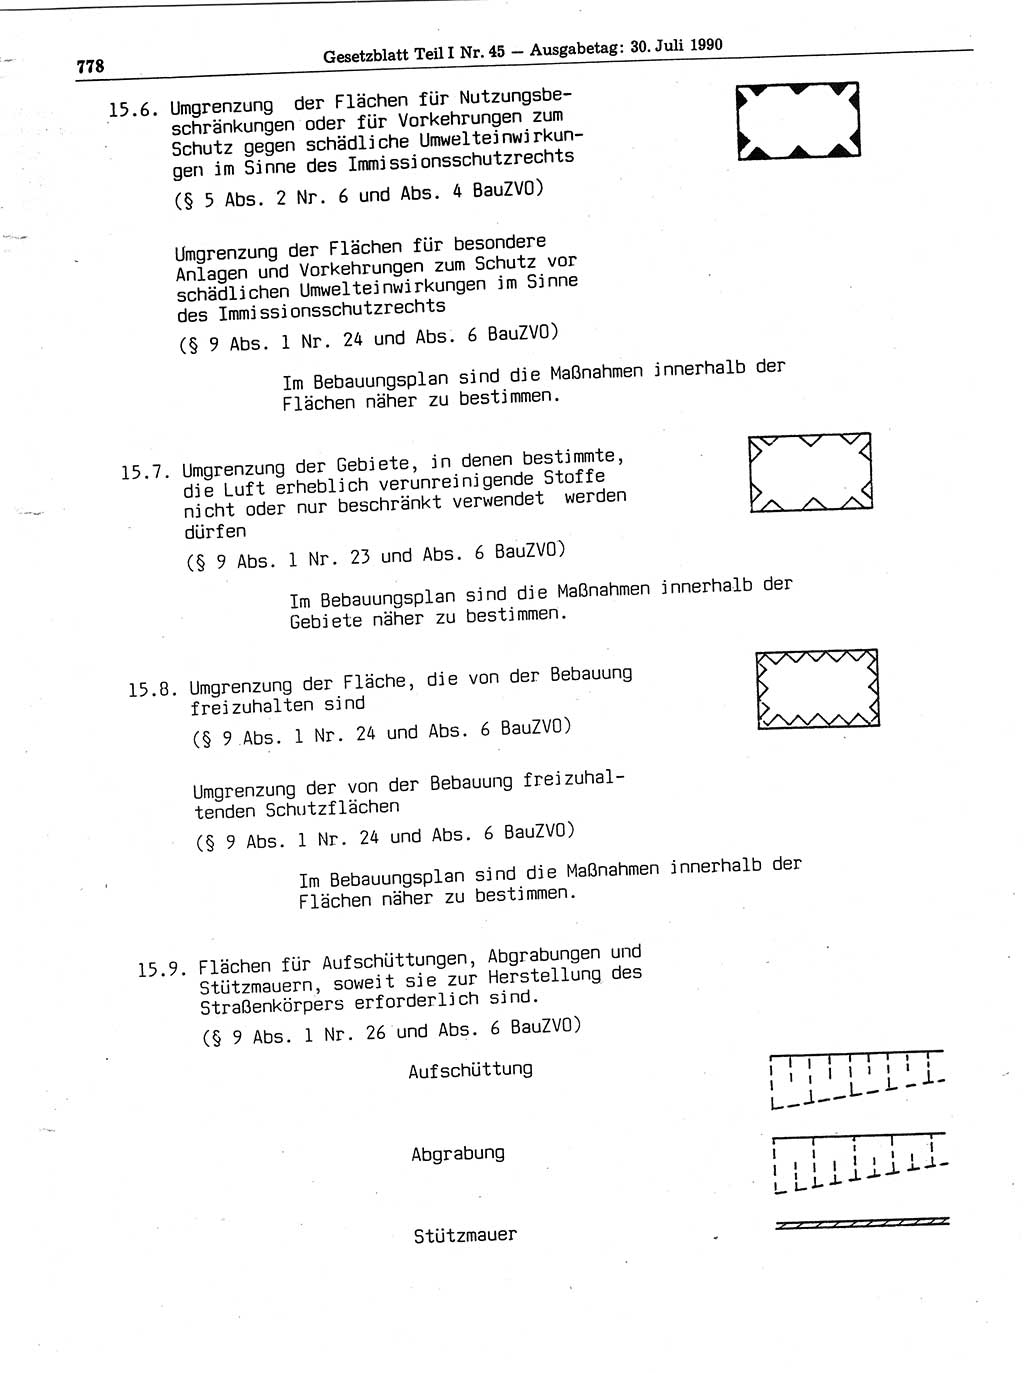 Gesetzblatt (GBl.) der Deutschen Demokratischen Republik (DDR) Teil Ⅰ 1990, Seite 778 (GBl. DDR Ⅰ 1990, S. 778)